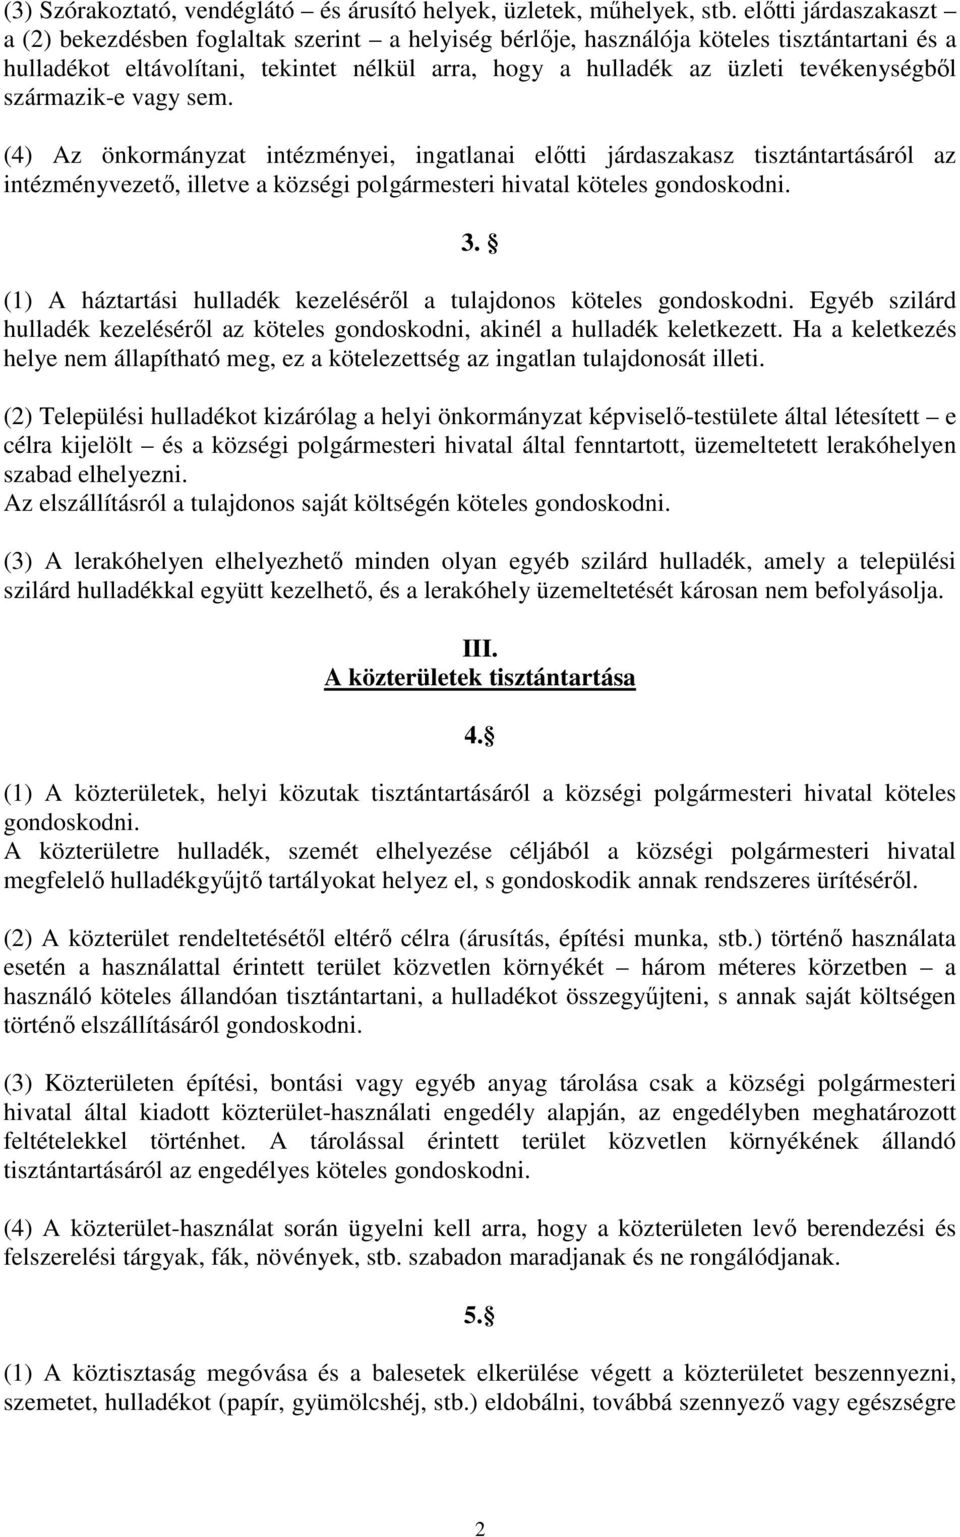 tevékenységbıl származik-e vagy sem. (4) Az önkormányzat intézményei, ingatlanai elıtti járdaszakasz tisztántartásáról az intézményvezetı, illetve a községi polgármesteri hivatal köteles gondoskodni.